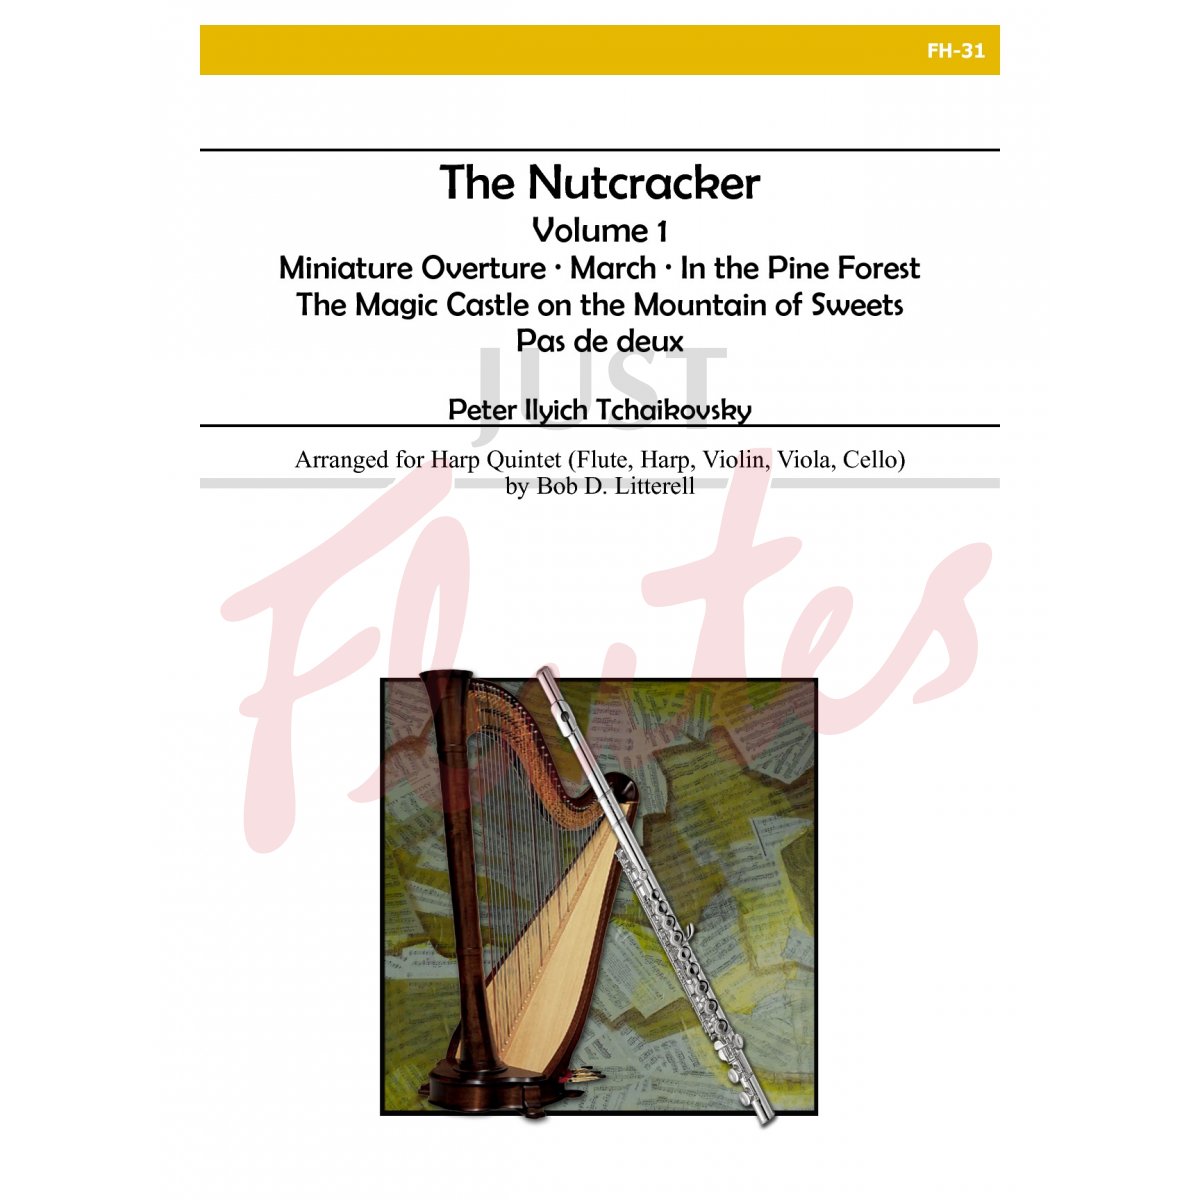 The Nutcracker, Volume 1 for Flute, Harp, Violin, Viola and Cello